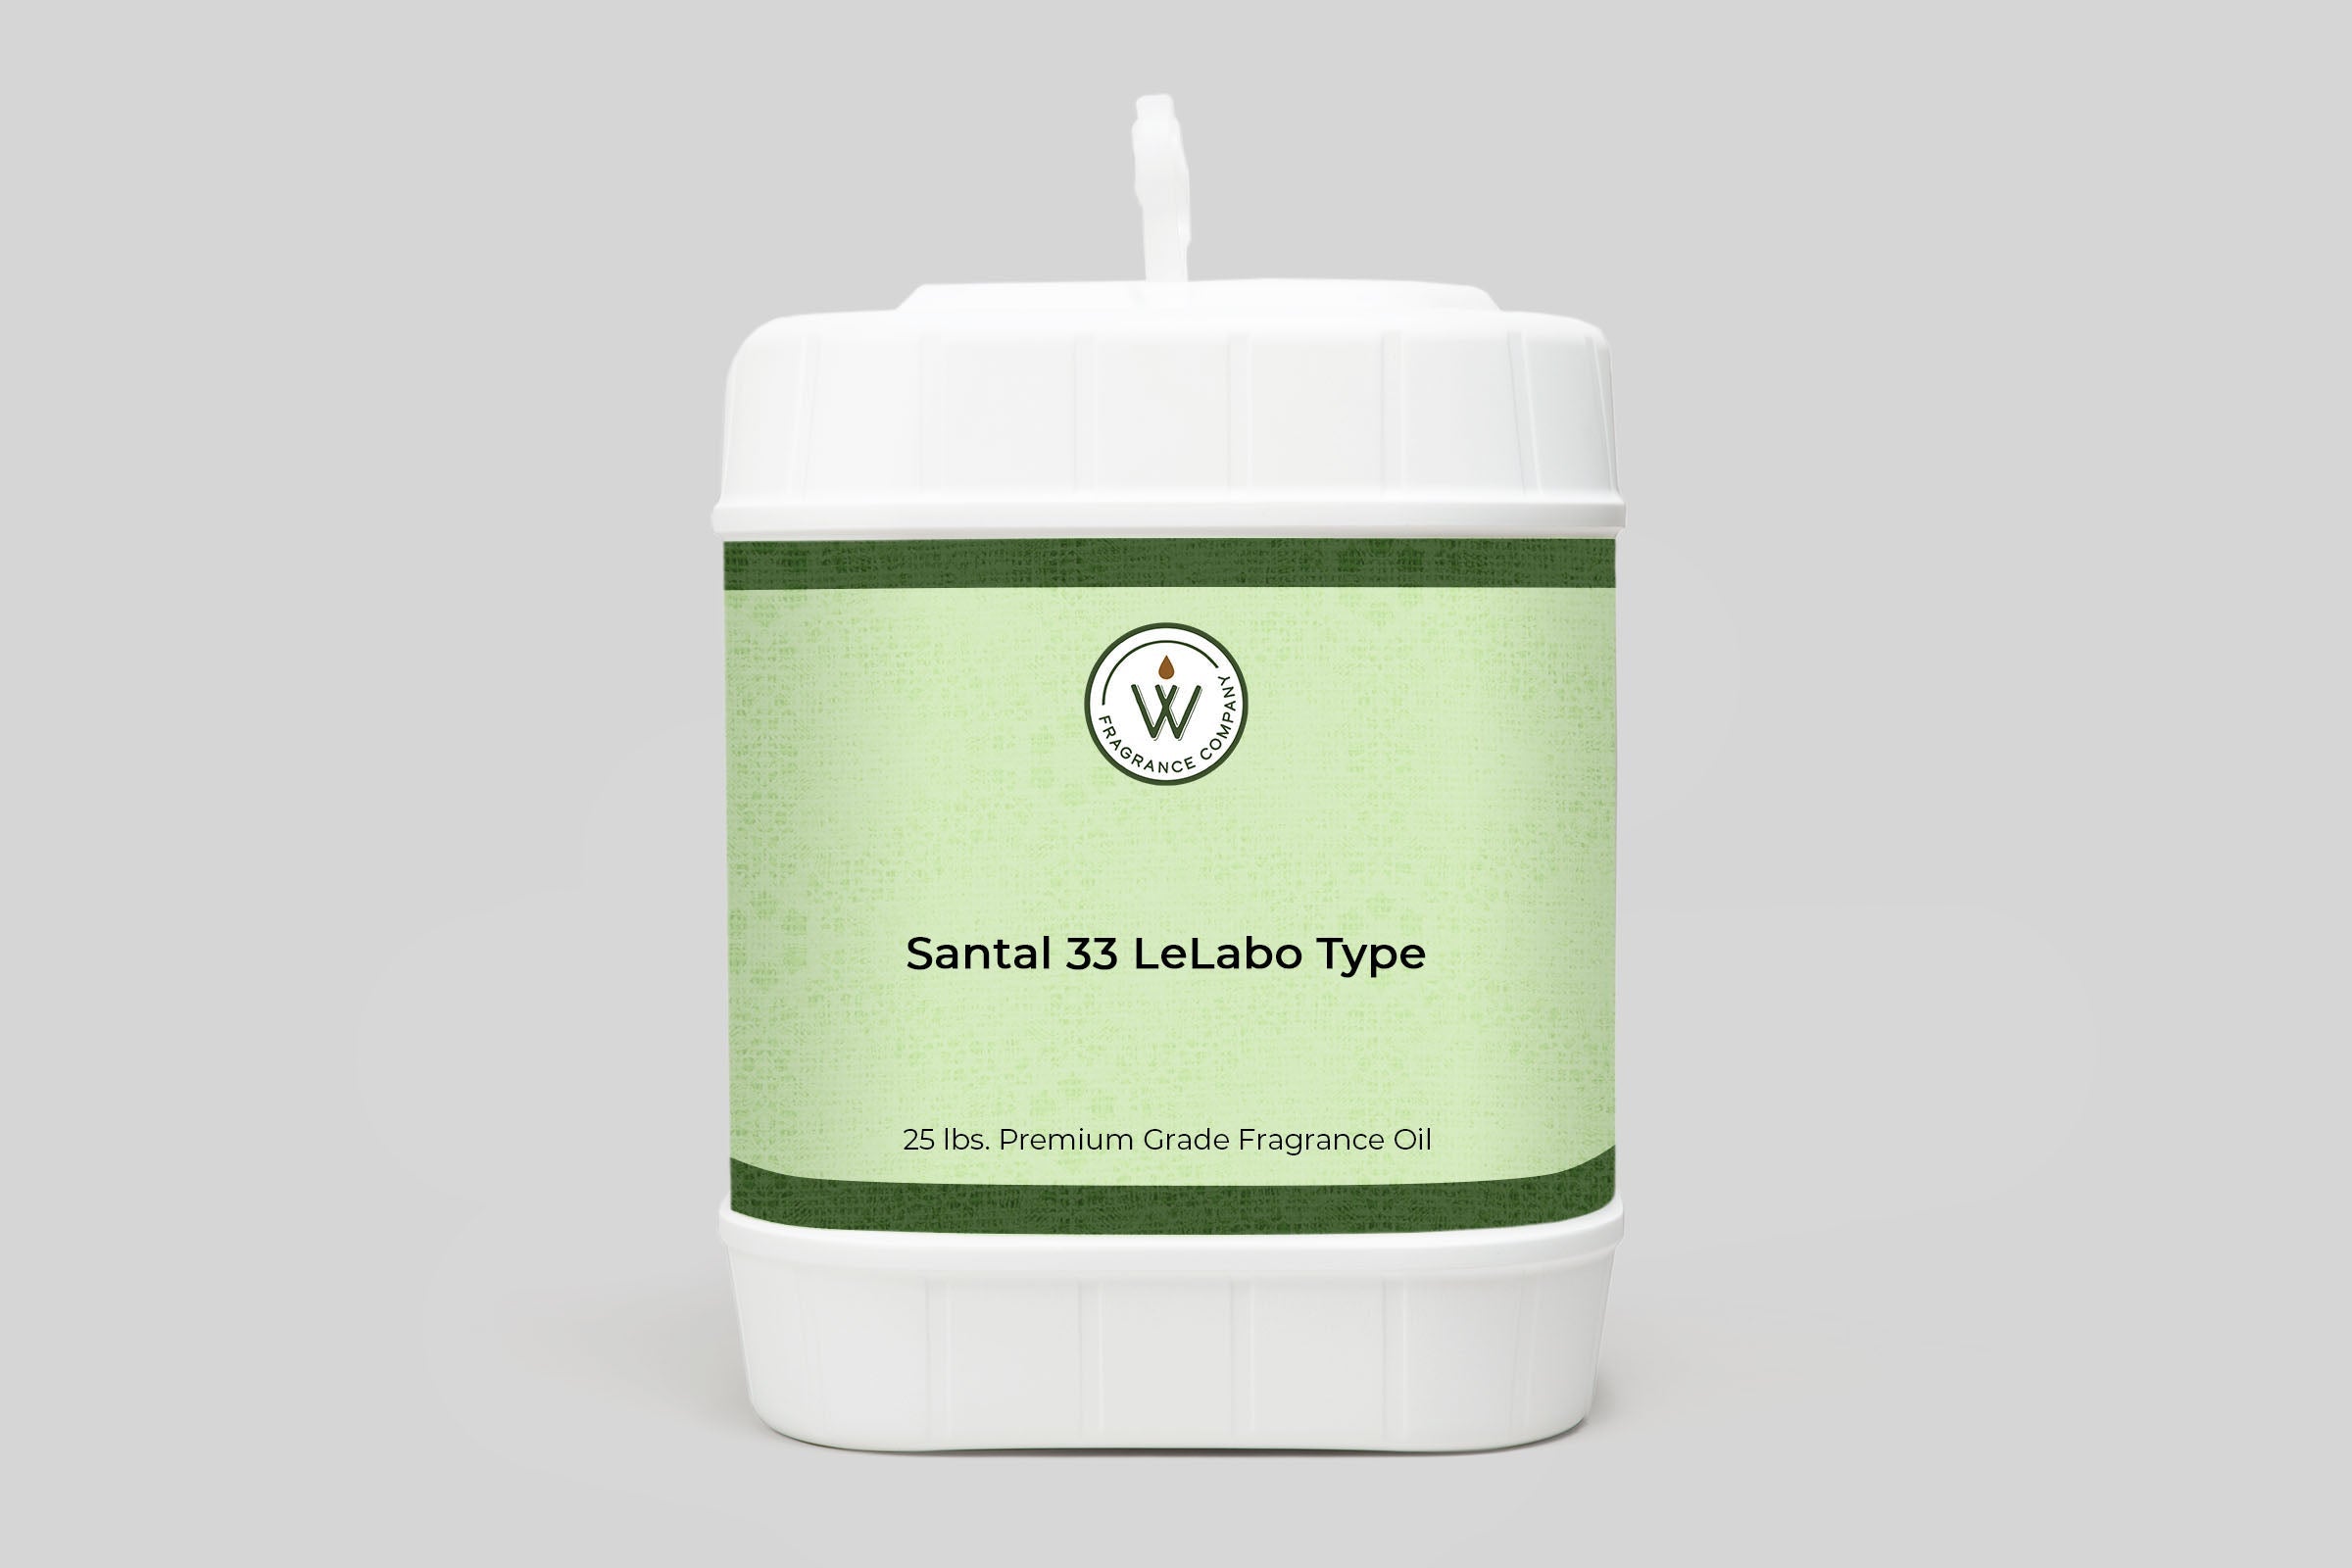 Santal 33 LeLabo Type Fragrance Oil